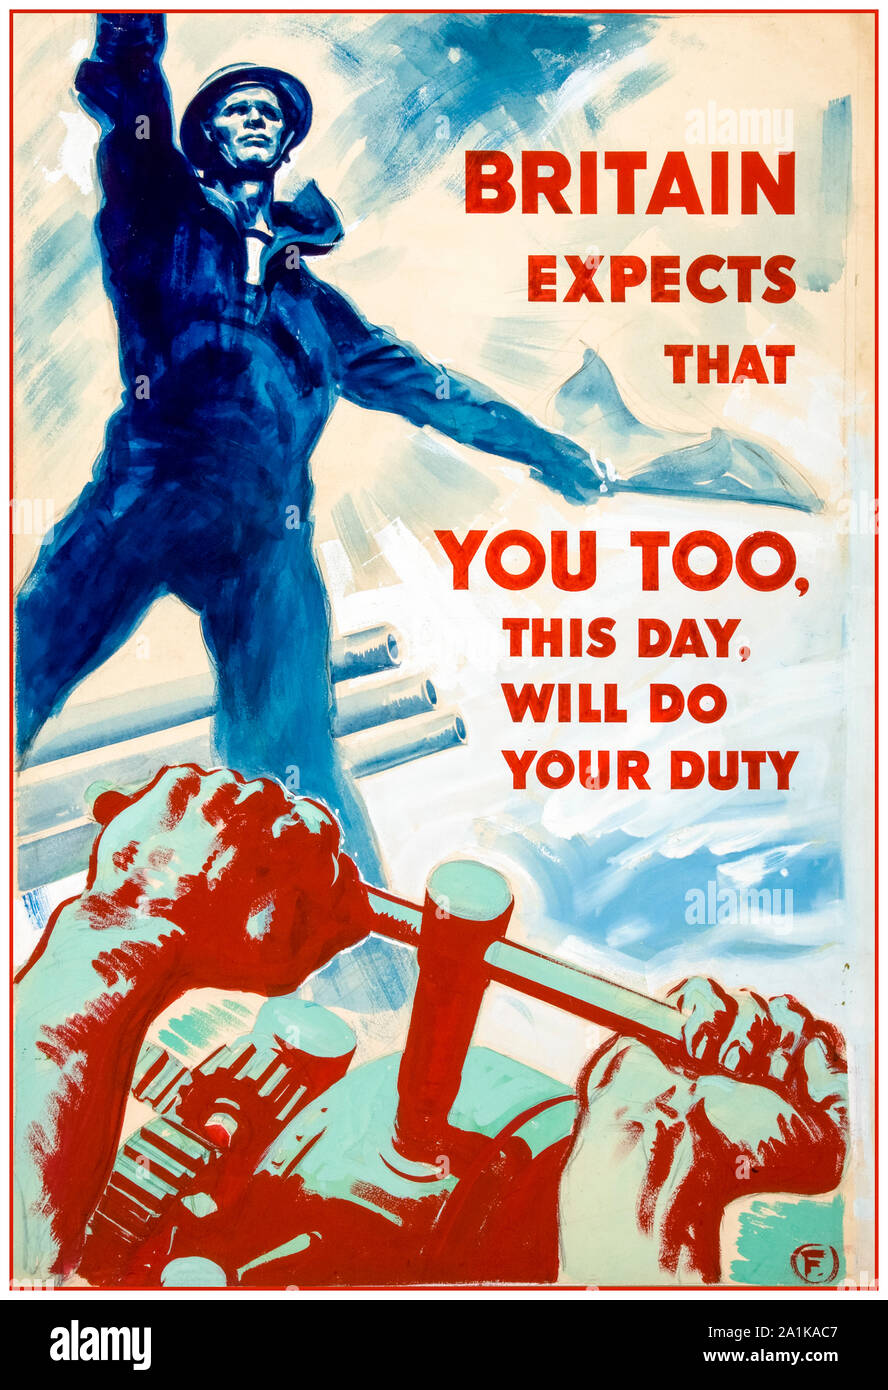 British, WW2, industria, la Gran Bretagna si aspetta che anche voi, in questo giorno, sarà in grado di fare il tuo dovere, poster, 1939-1946 Foto Stock